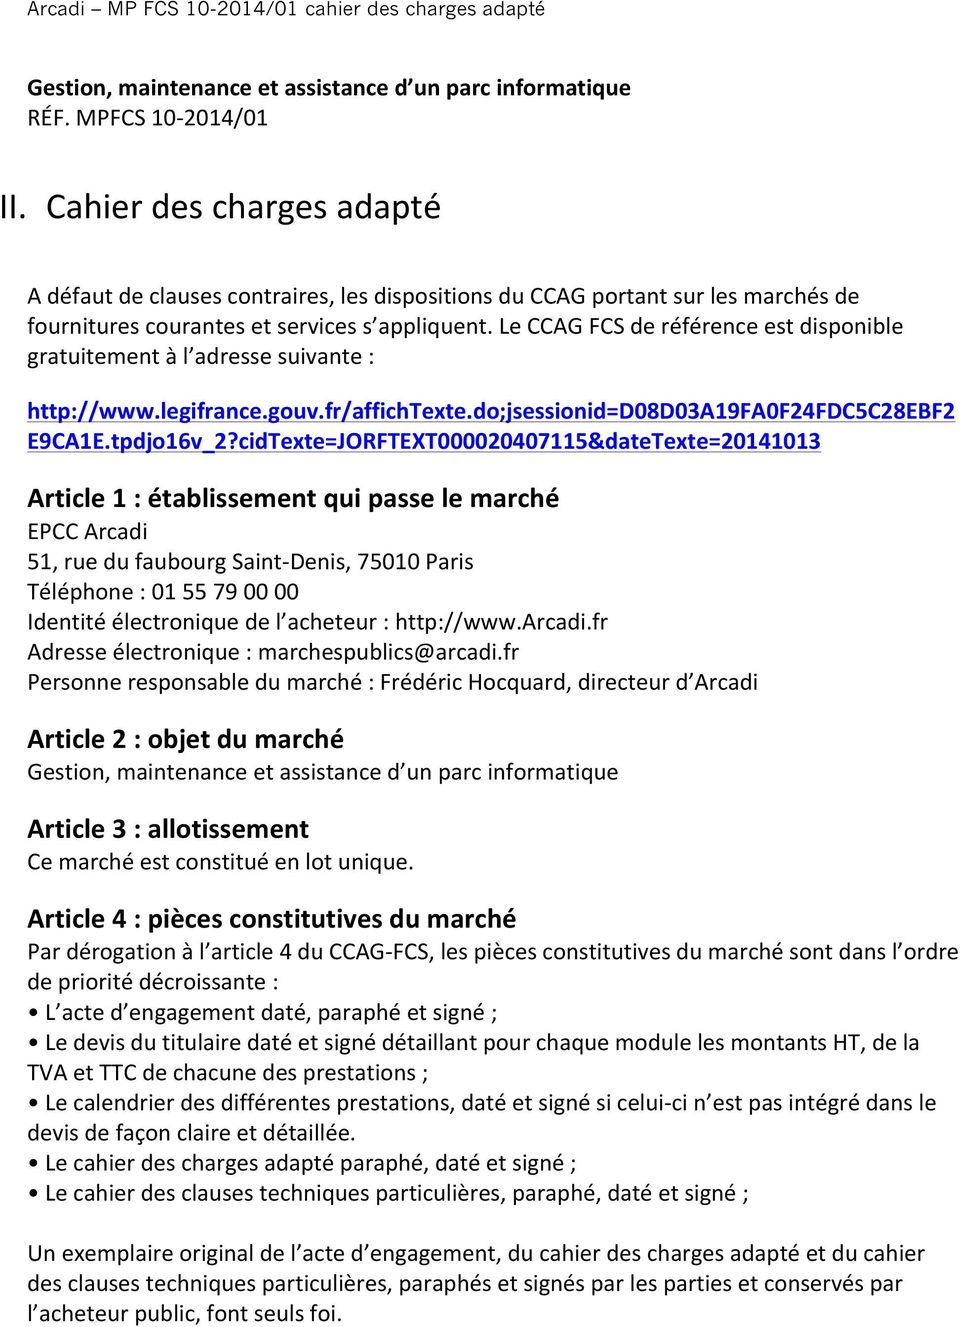 Le CCAG FCS de référence est disponible gratuitement à l adresse suivante : http://www.legifrance.gouv.fr/affichtexte.do;jsessionid=d08d03a19fa0f24fdc5c28ebf2 E9CA1E.tpdjo16v_2?